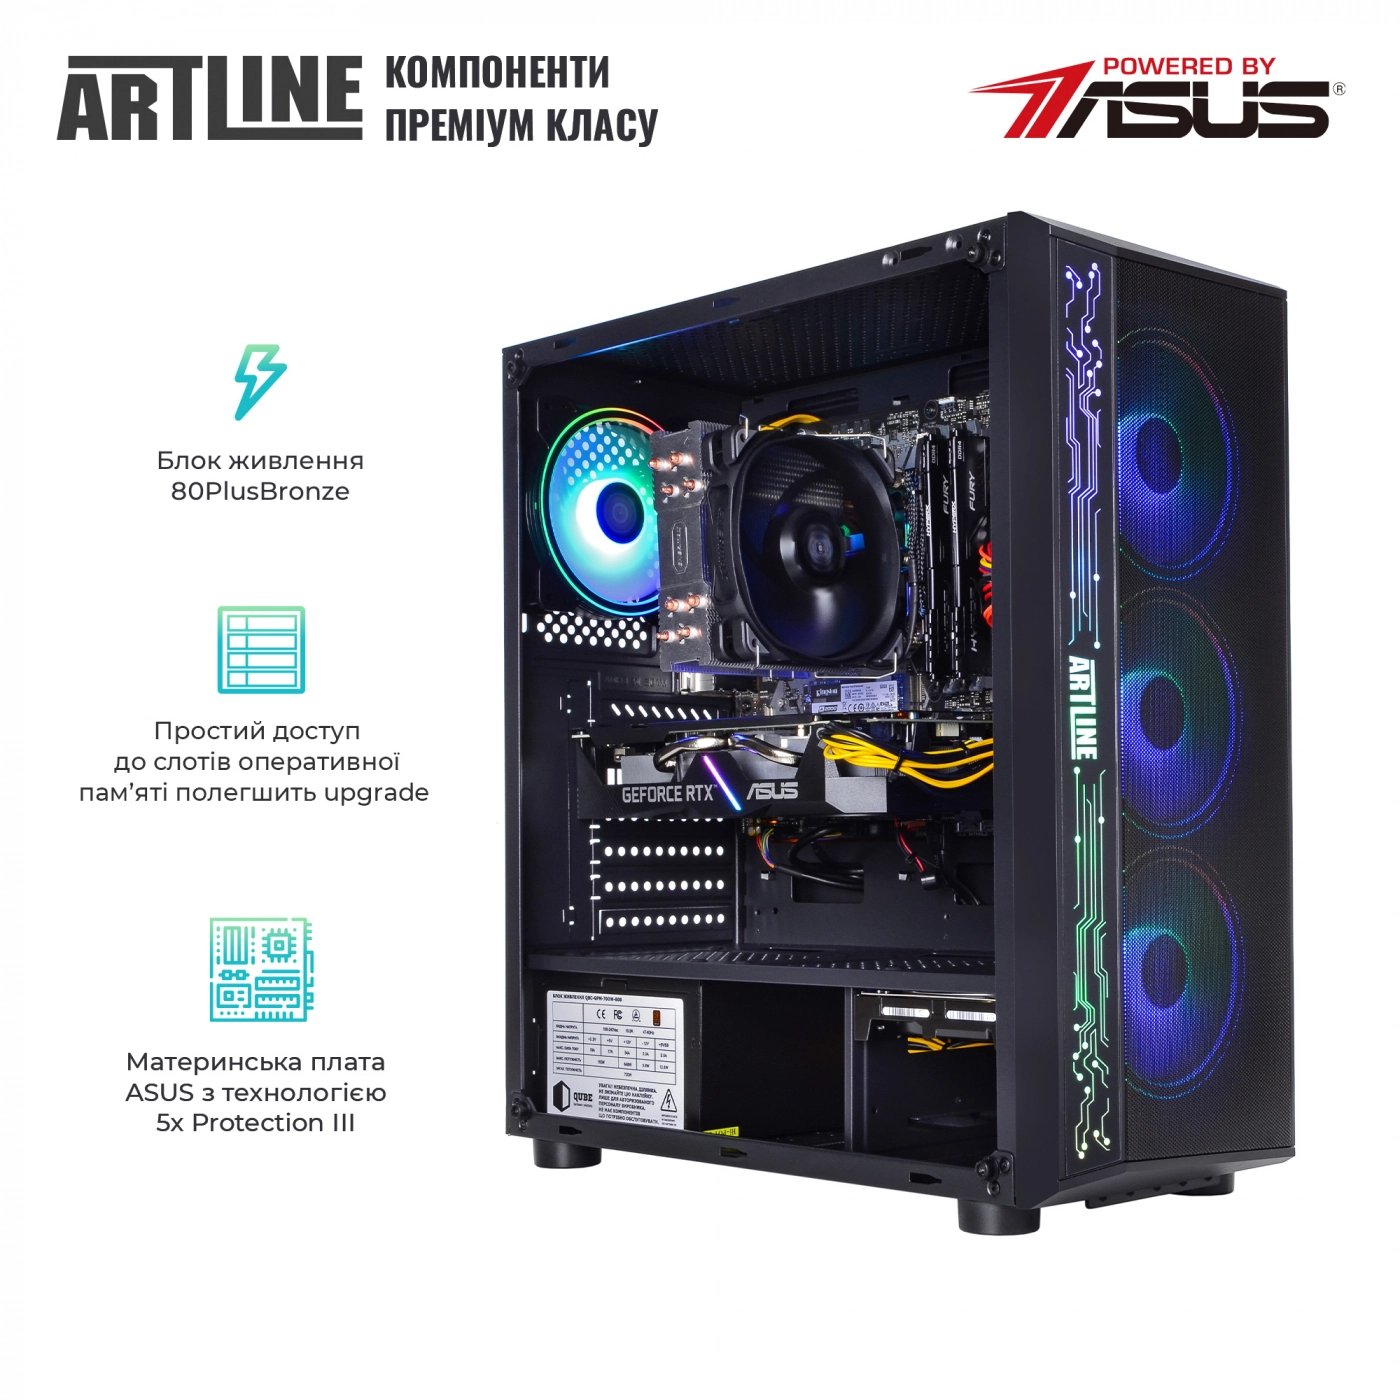 Купить Компьютер ARTLINE Gaming X65v35 - фото 2